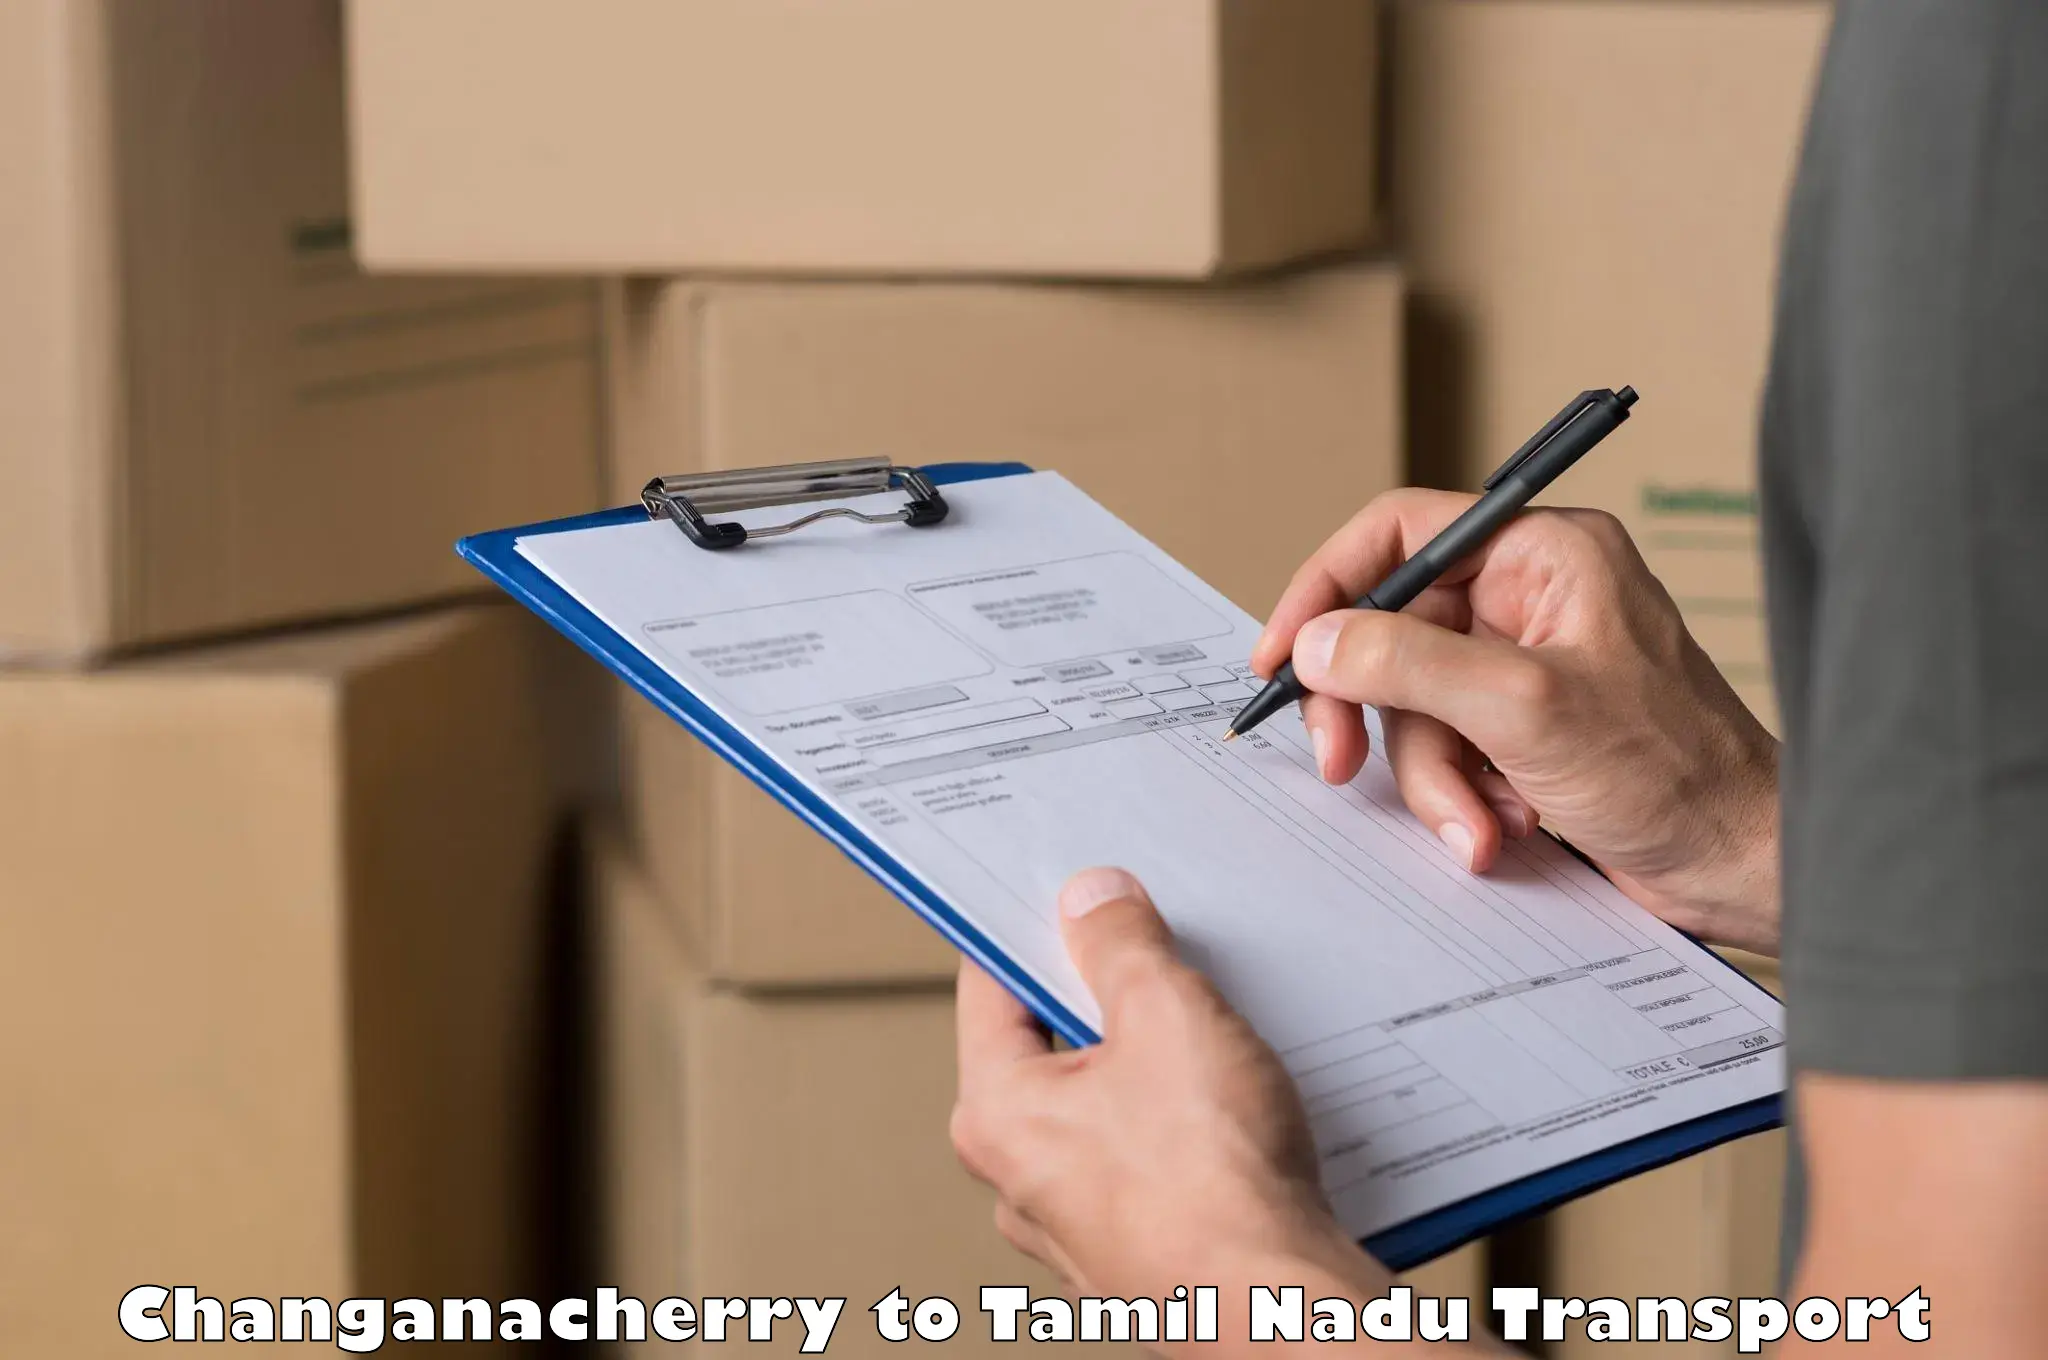 Cargo transportation services Changanacherry to Udagamandalam